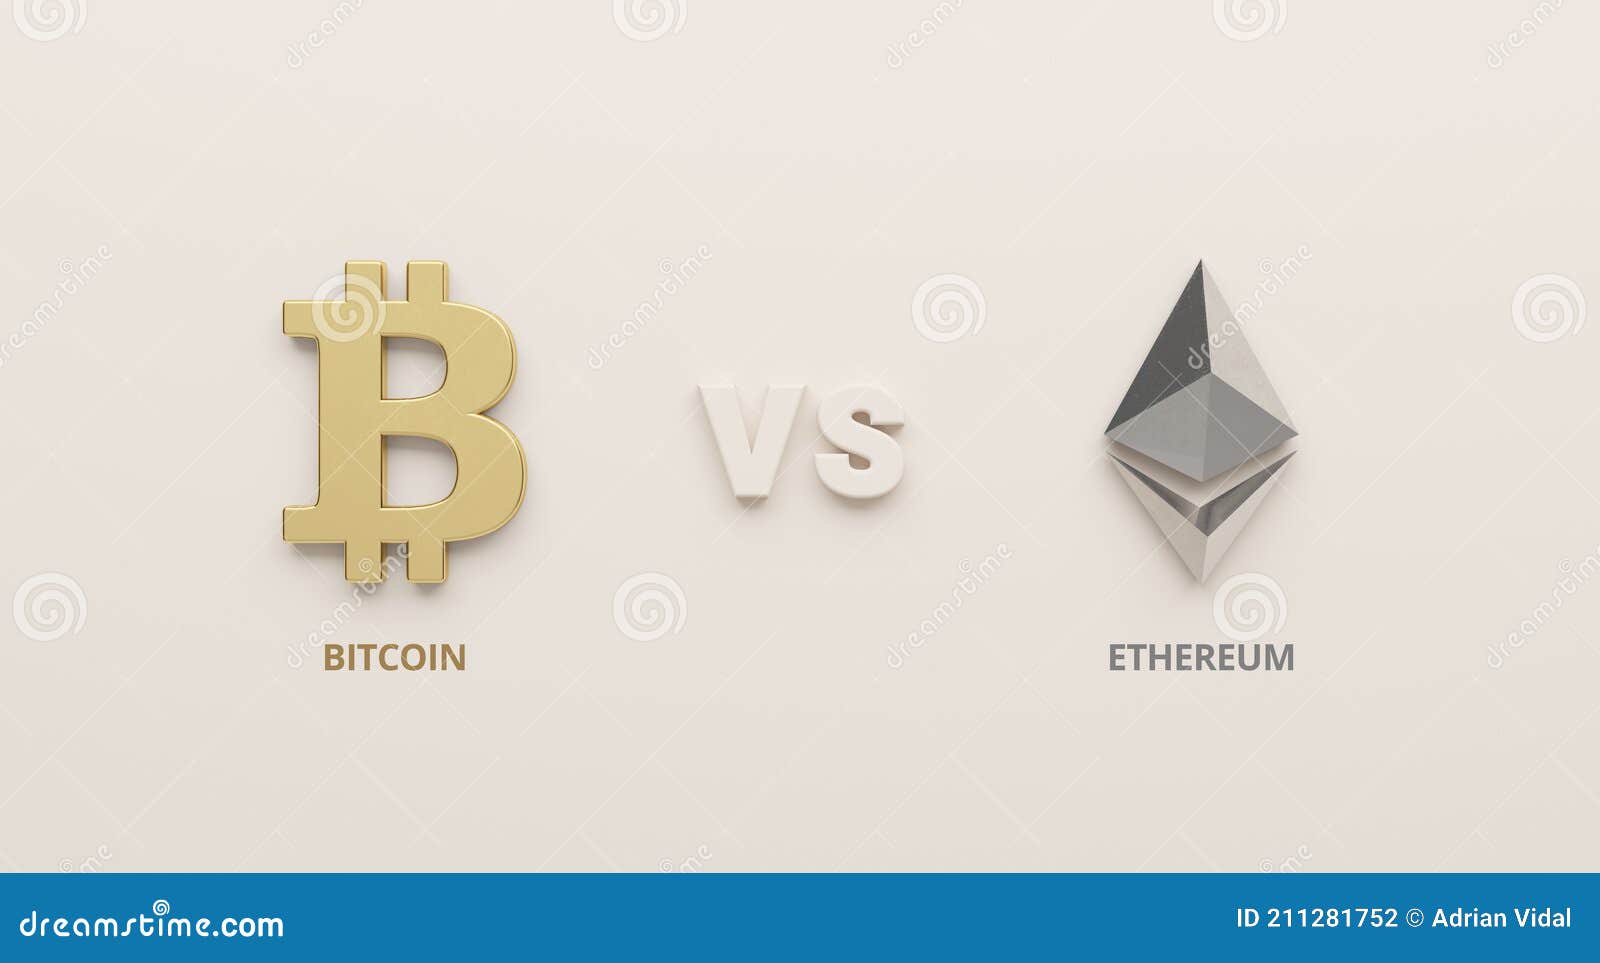 Mit „The Merge“ will Ethereum Bitcoin den Rang ablaufen